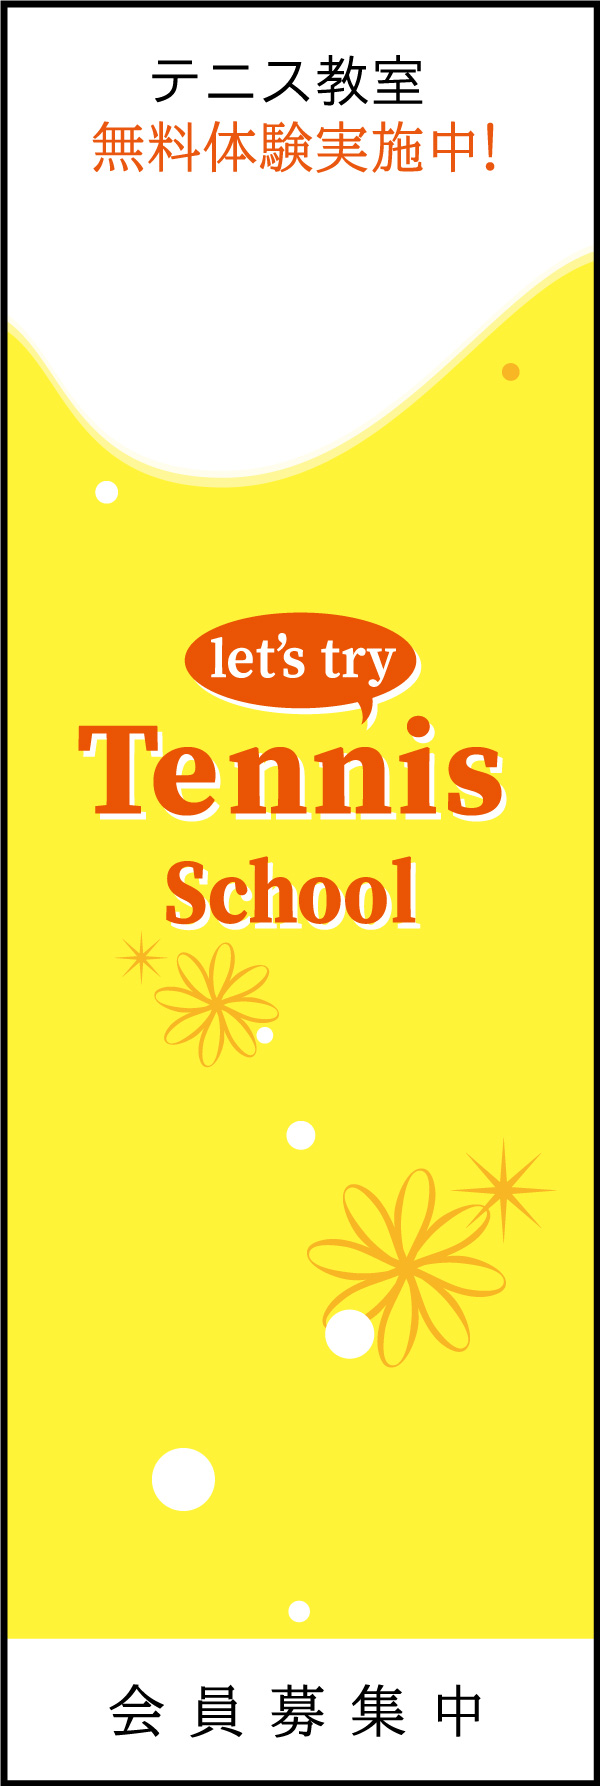 テニススクール 03 「テニススクール」ののぼりです。シンプルで品のあるデザインにしました。(Y.M)